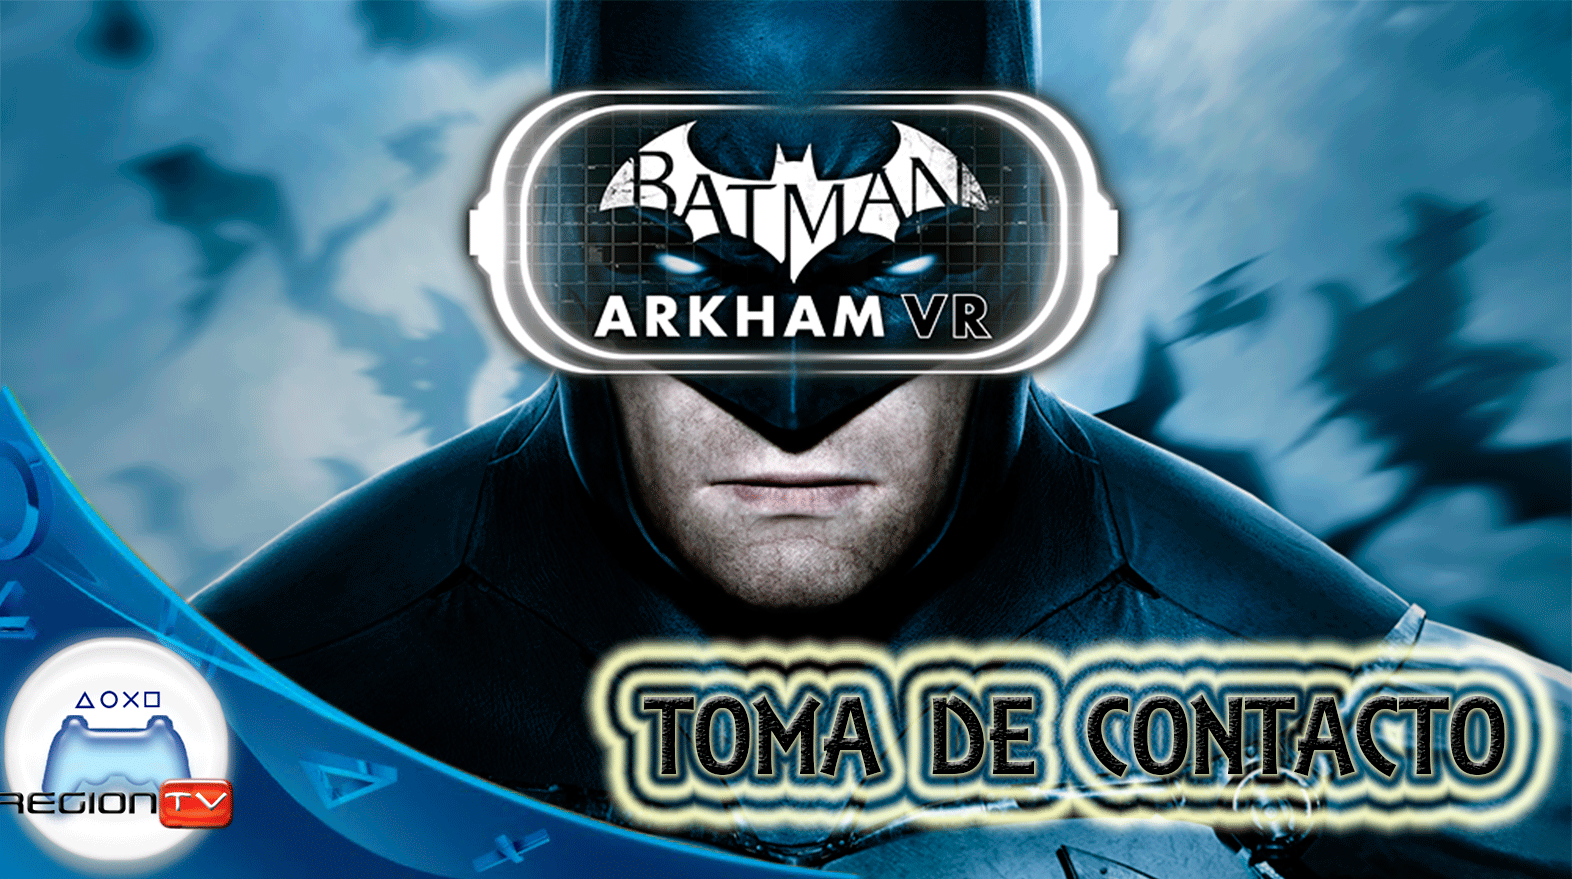 RegionTV  | Toma de contacto – Batman Arkham VR